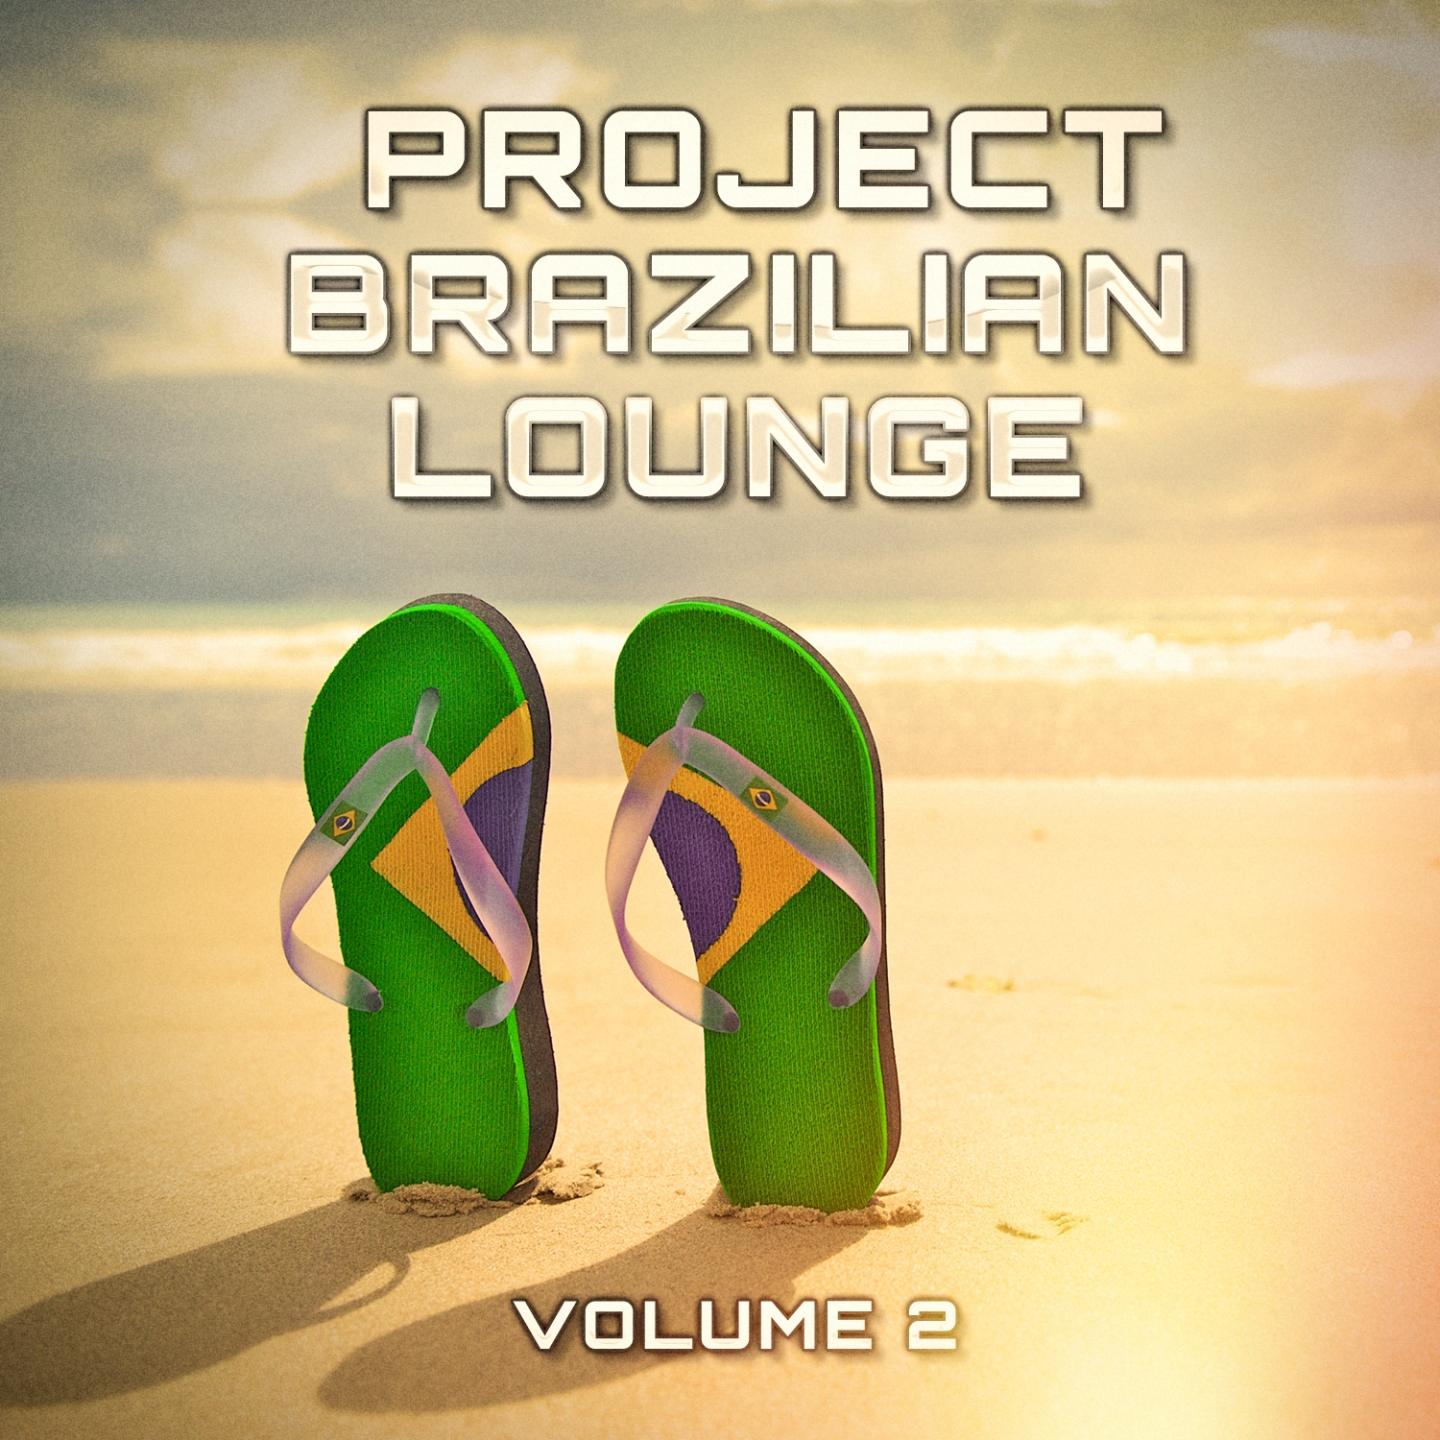 Brazilian Lounge Project, Vol. 2